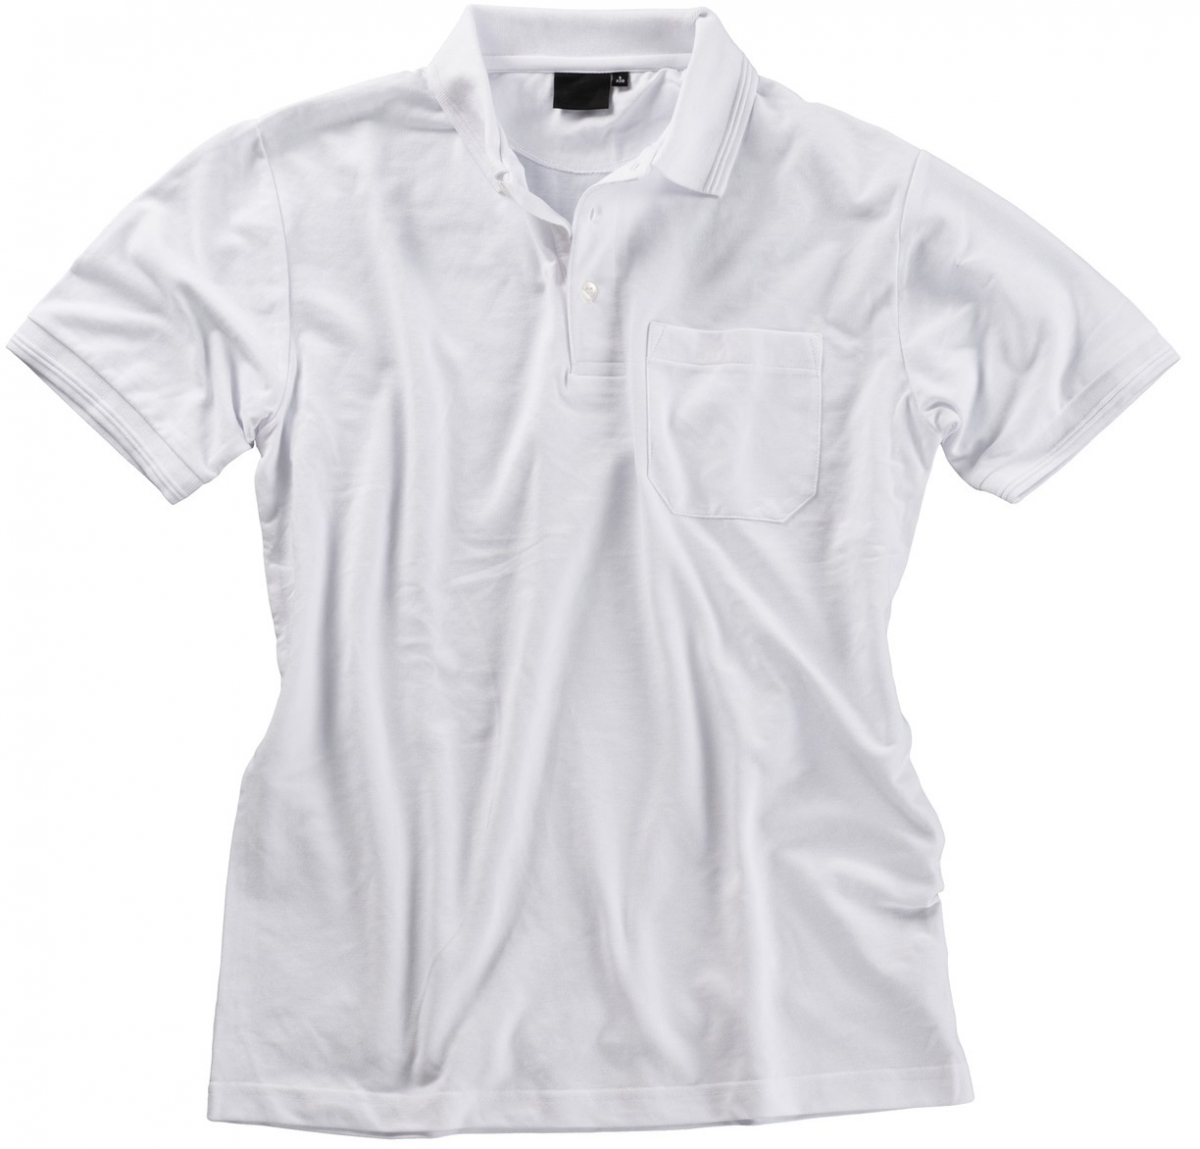 BEB Polo-Shirt Premium, MG 210/220, weiß